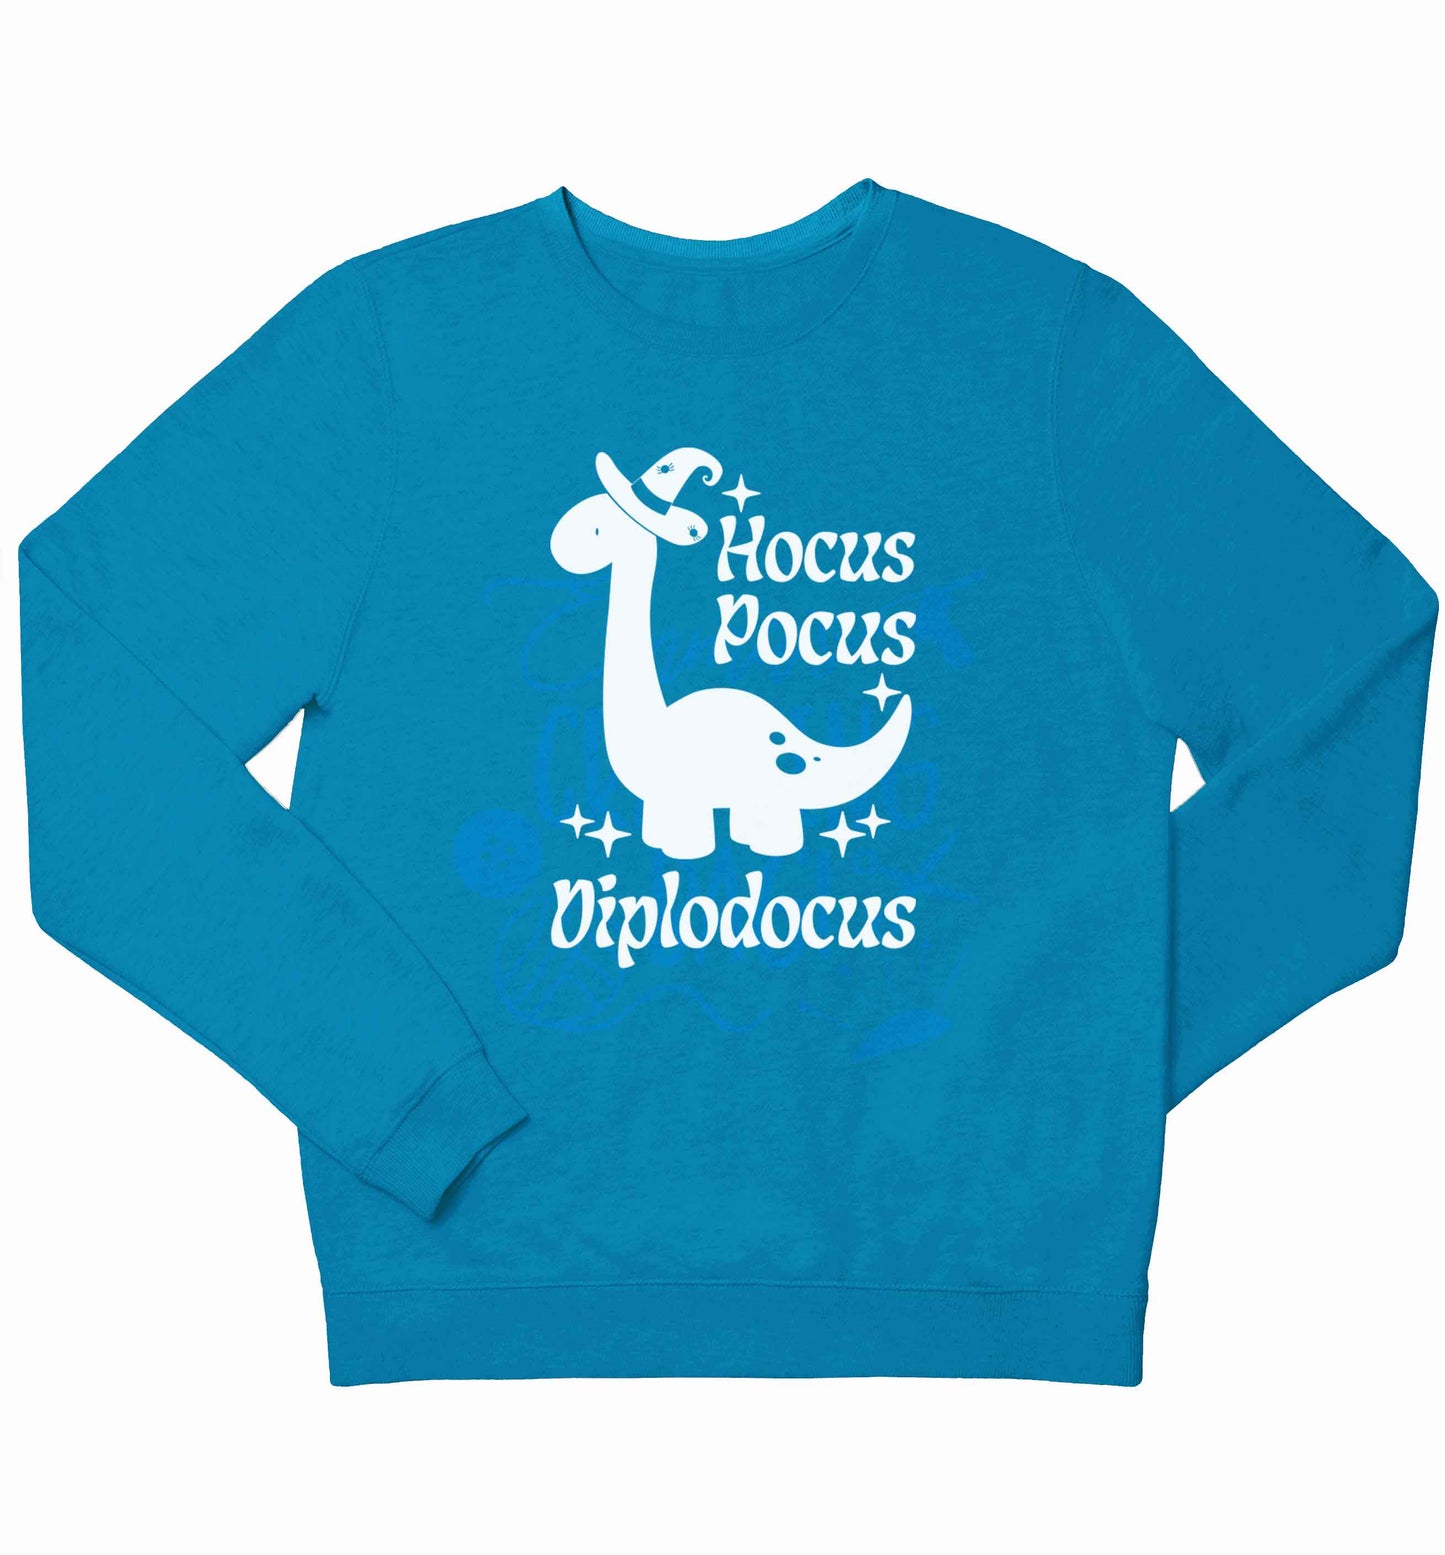 Hocus pocus diplodocus Kit children's blue sweater 12-13 Years